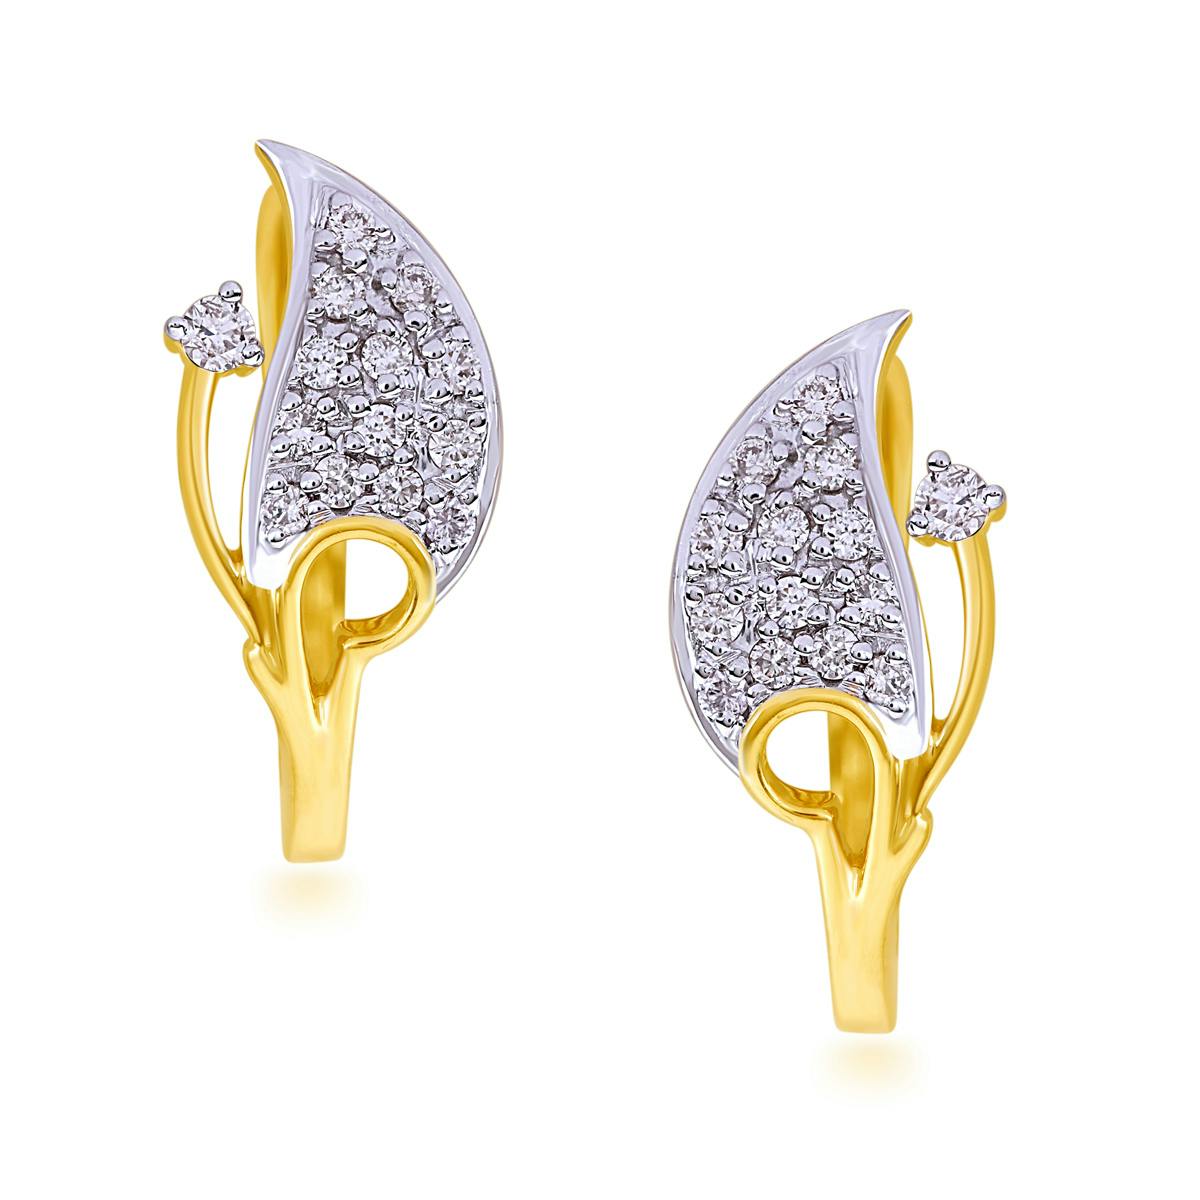 Destiny bali earrings